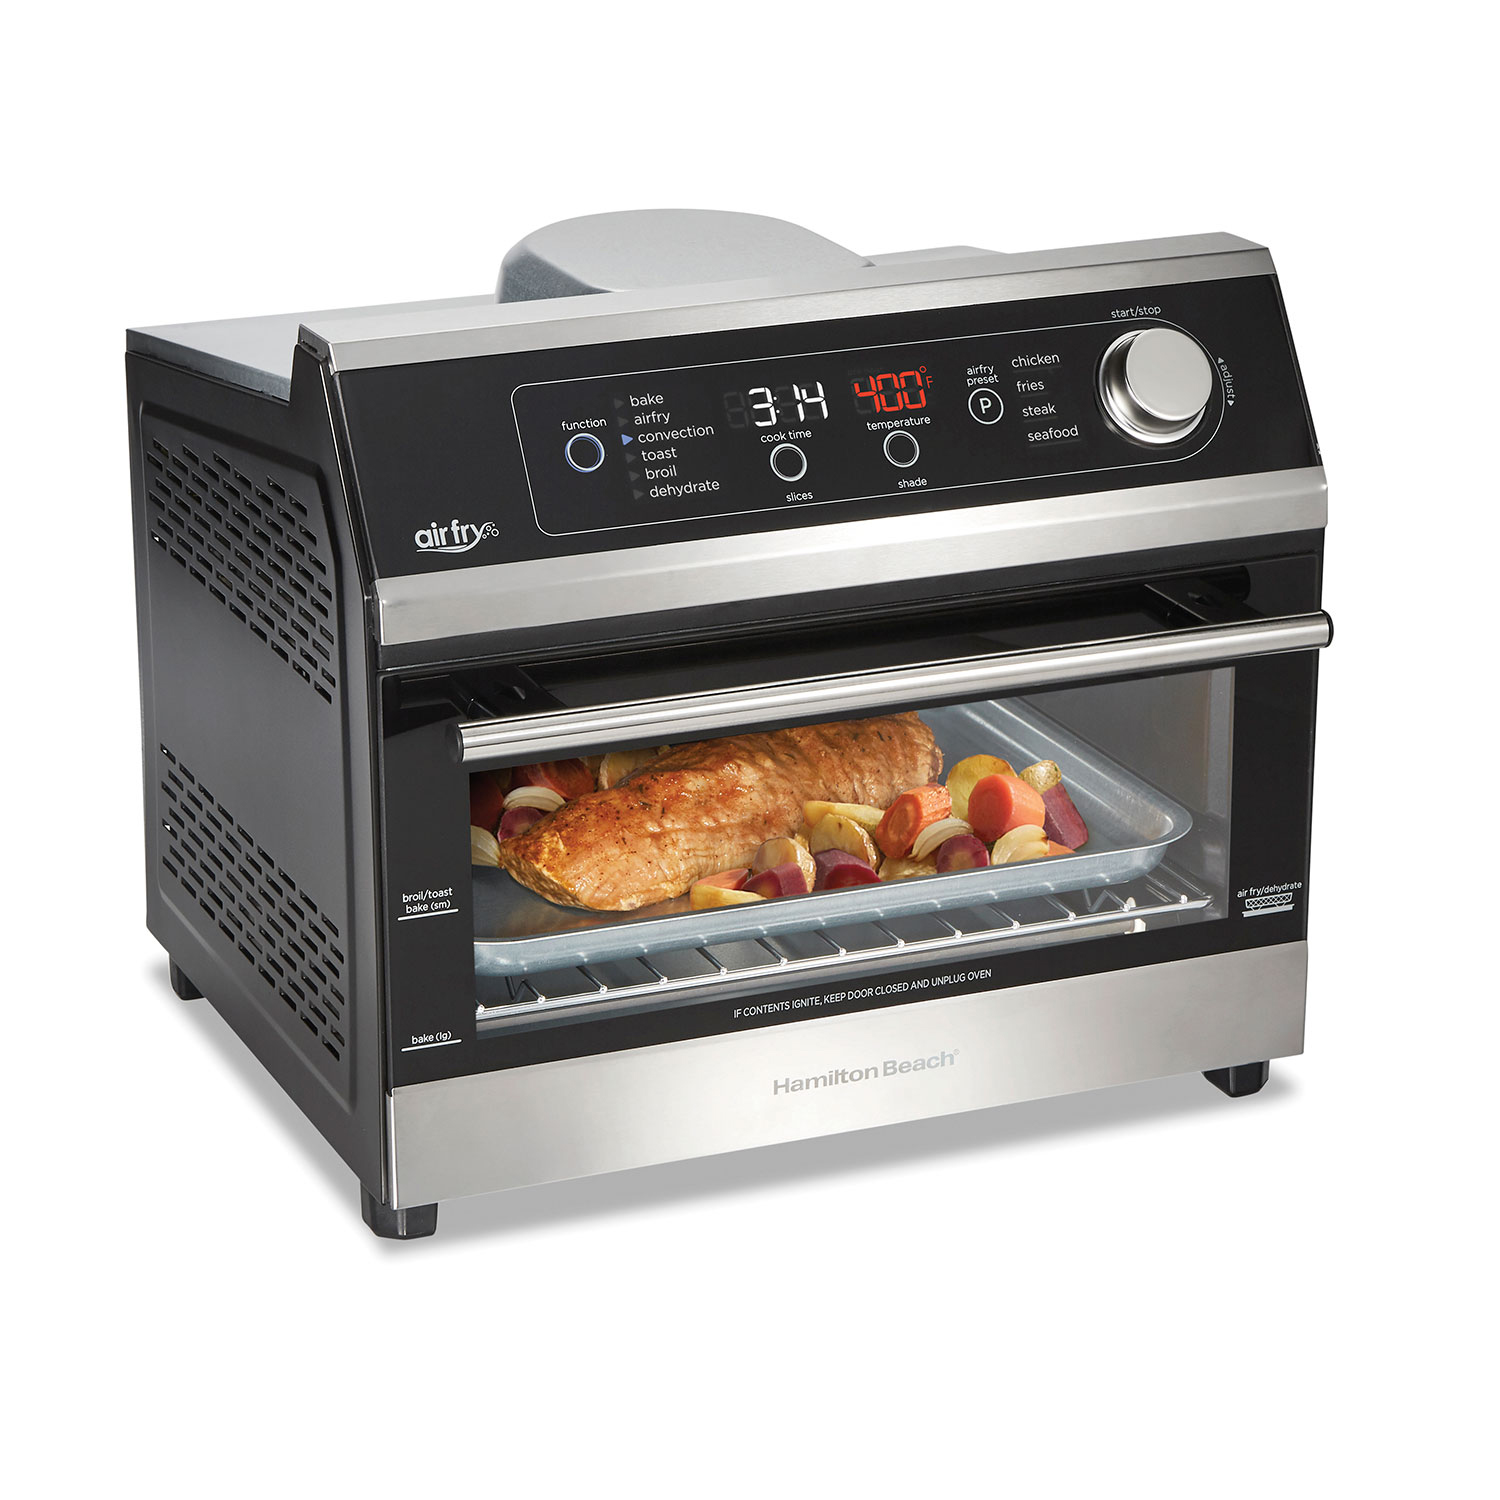 Hamilton Beach Digital Air Fryer Toaster Oven, 6 Slice Capacity